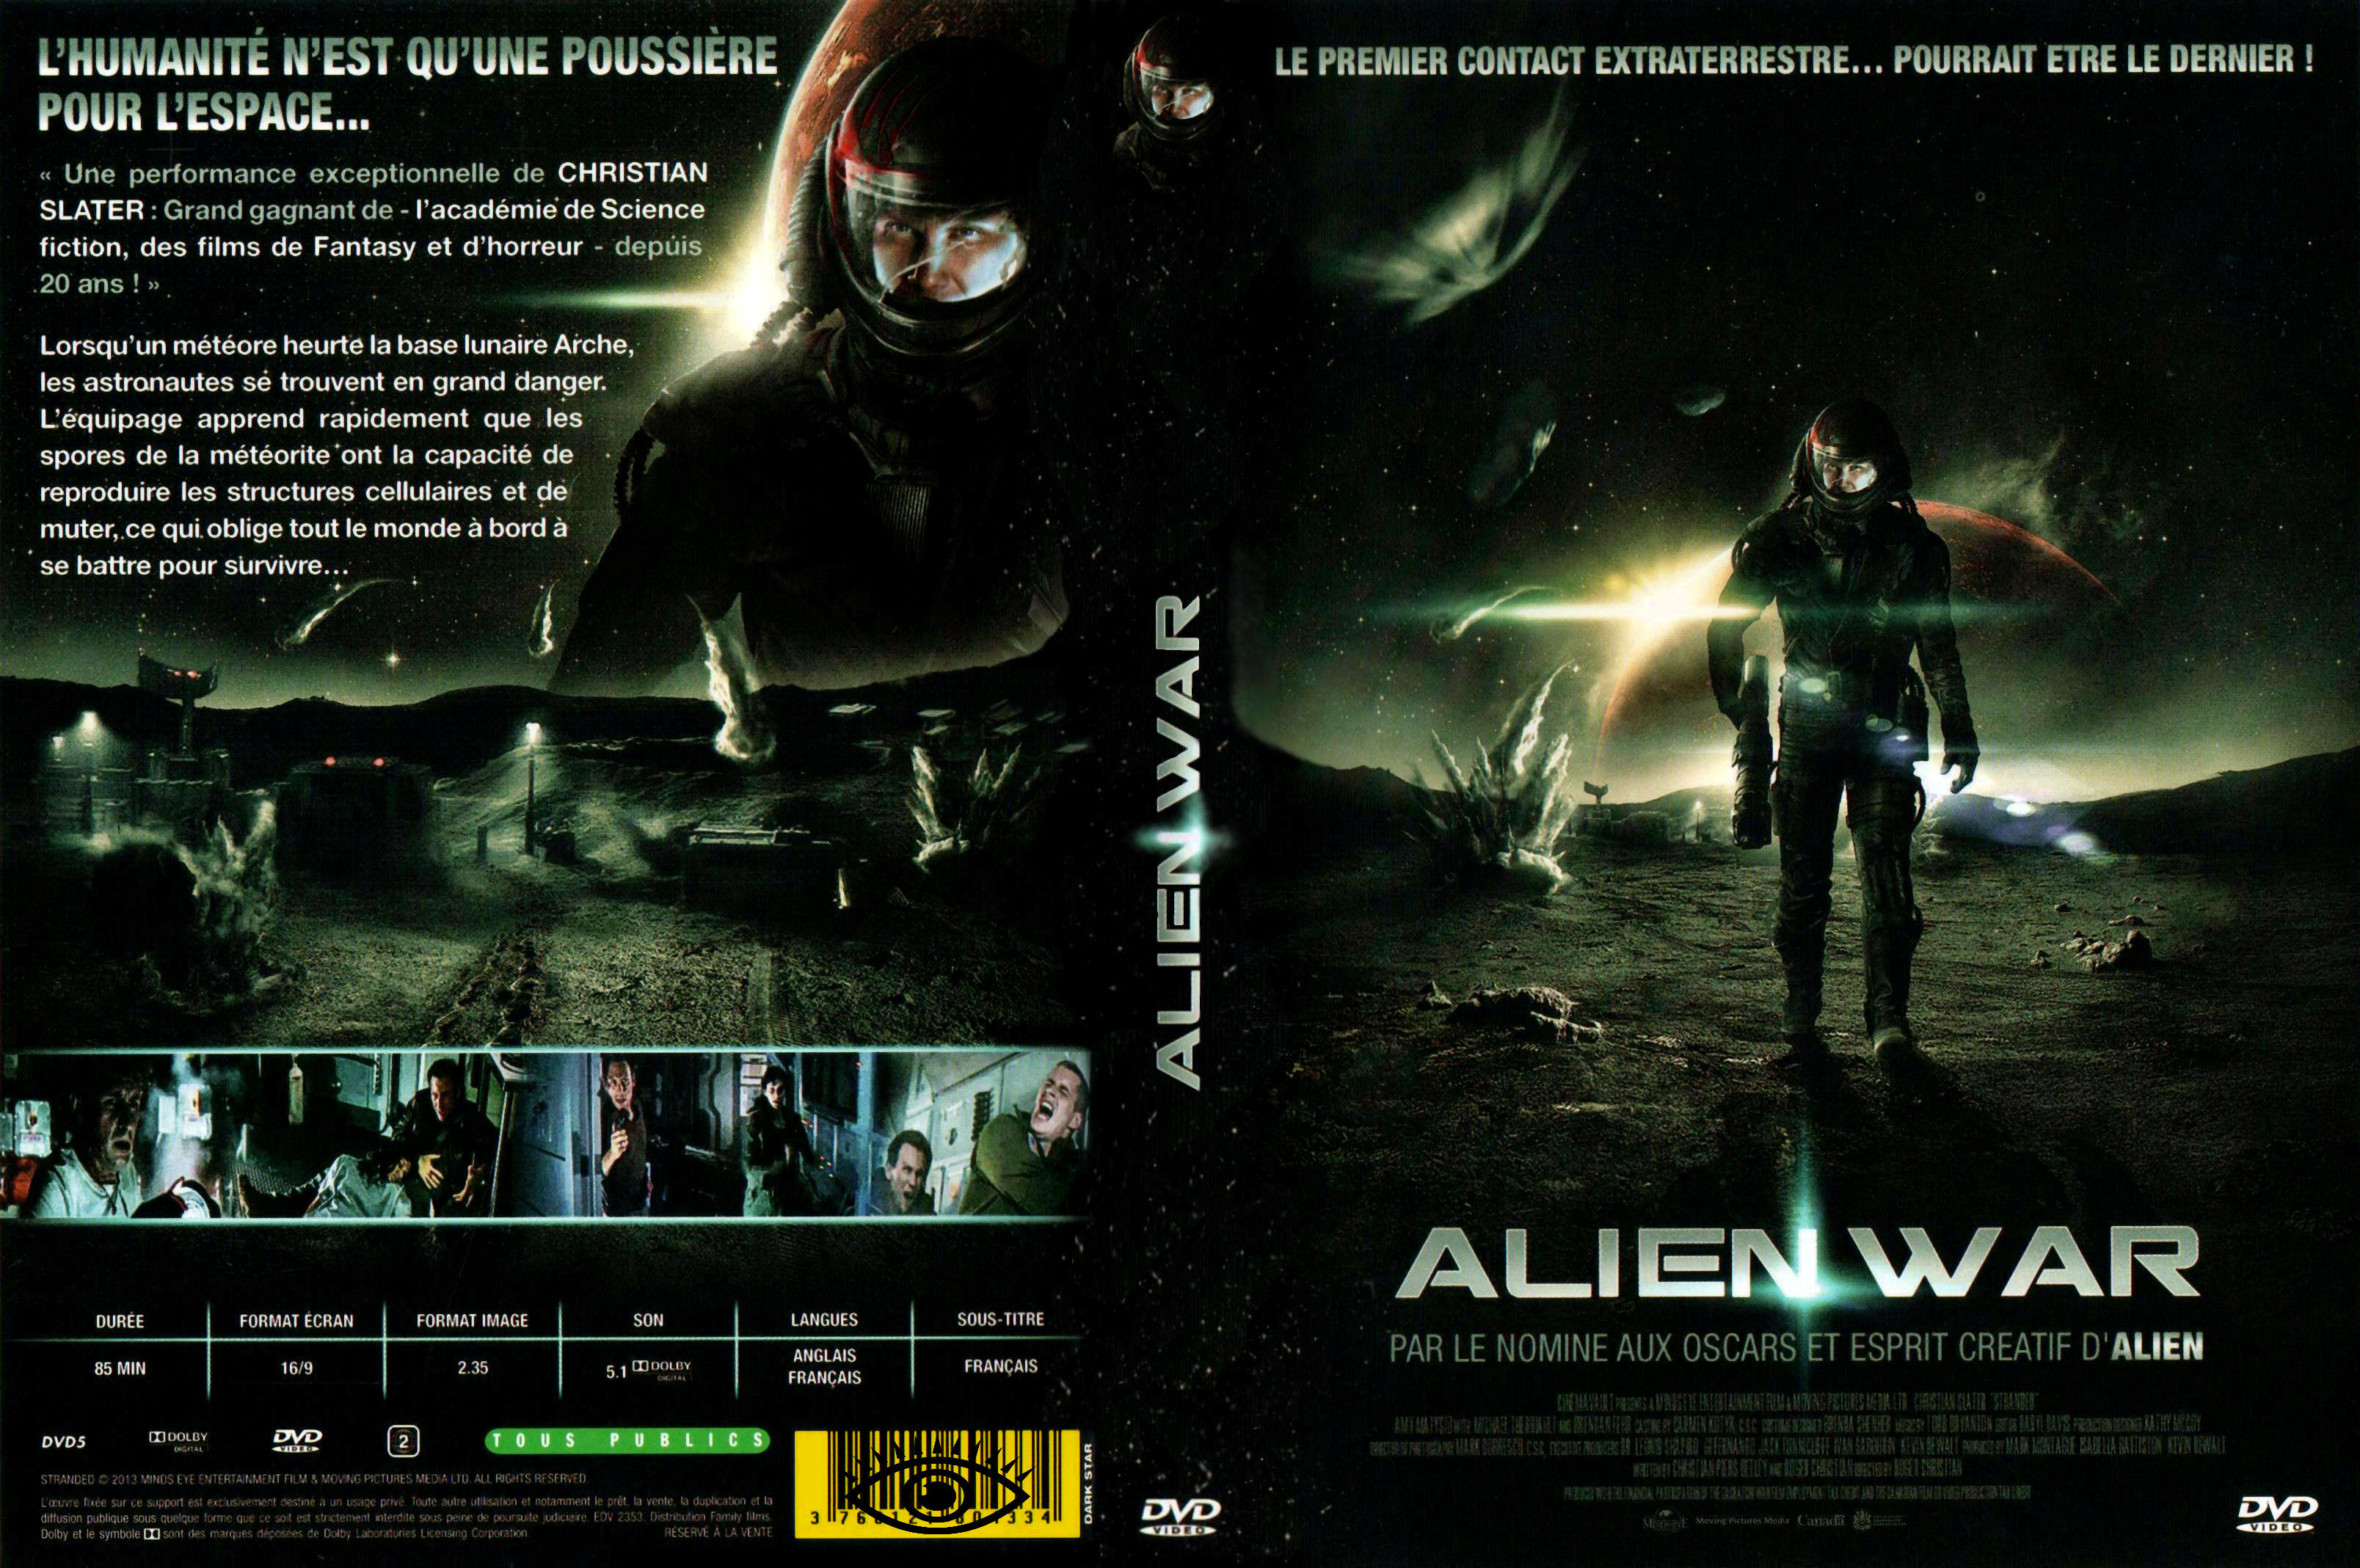 Jaquette DVD Alien war v2